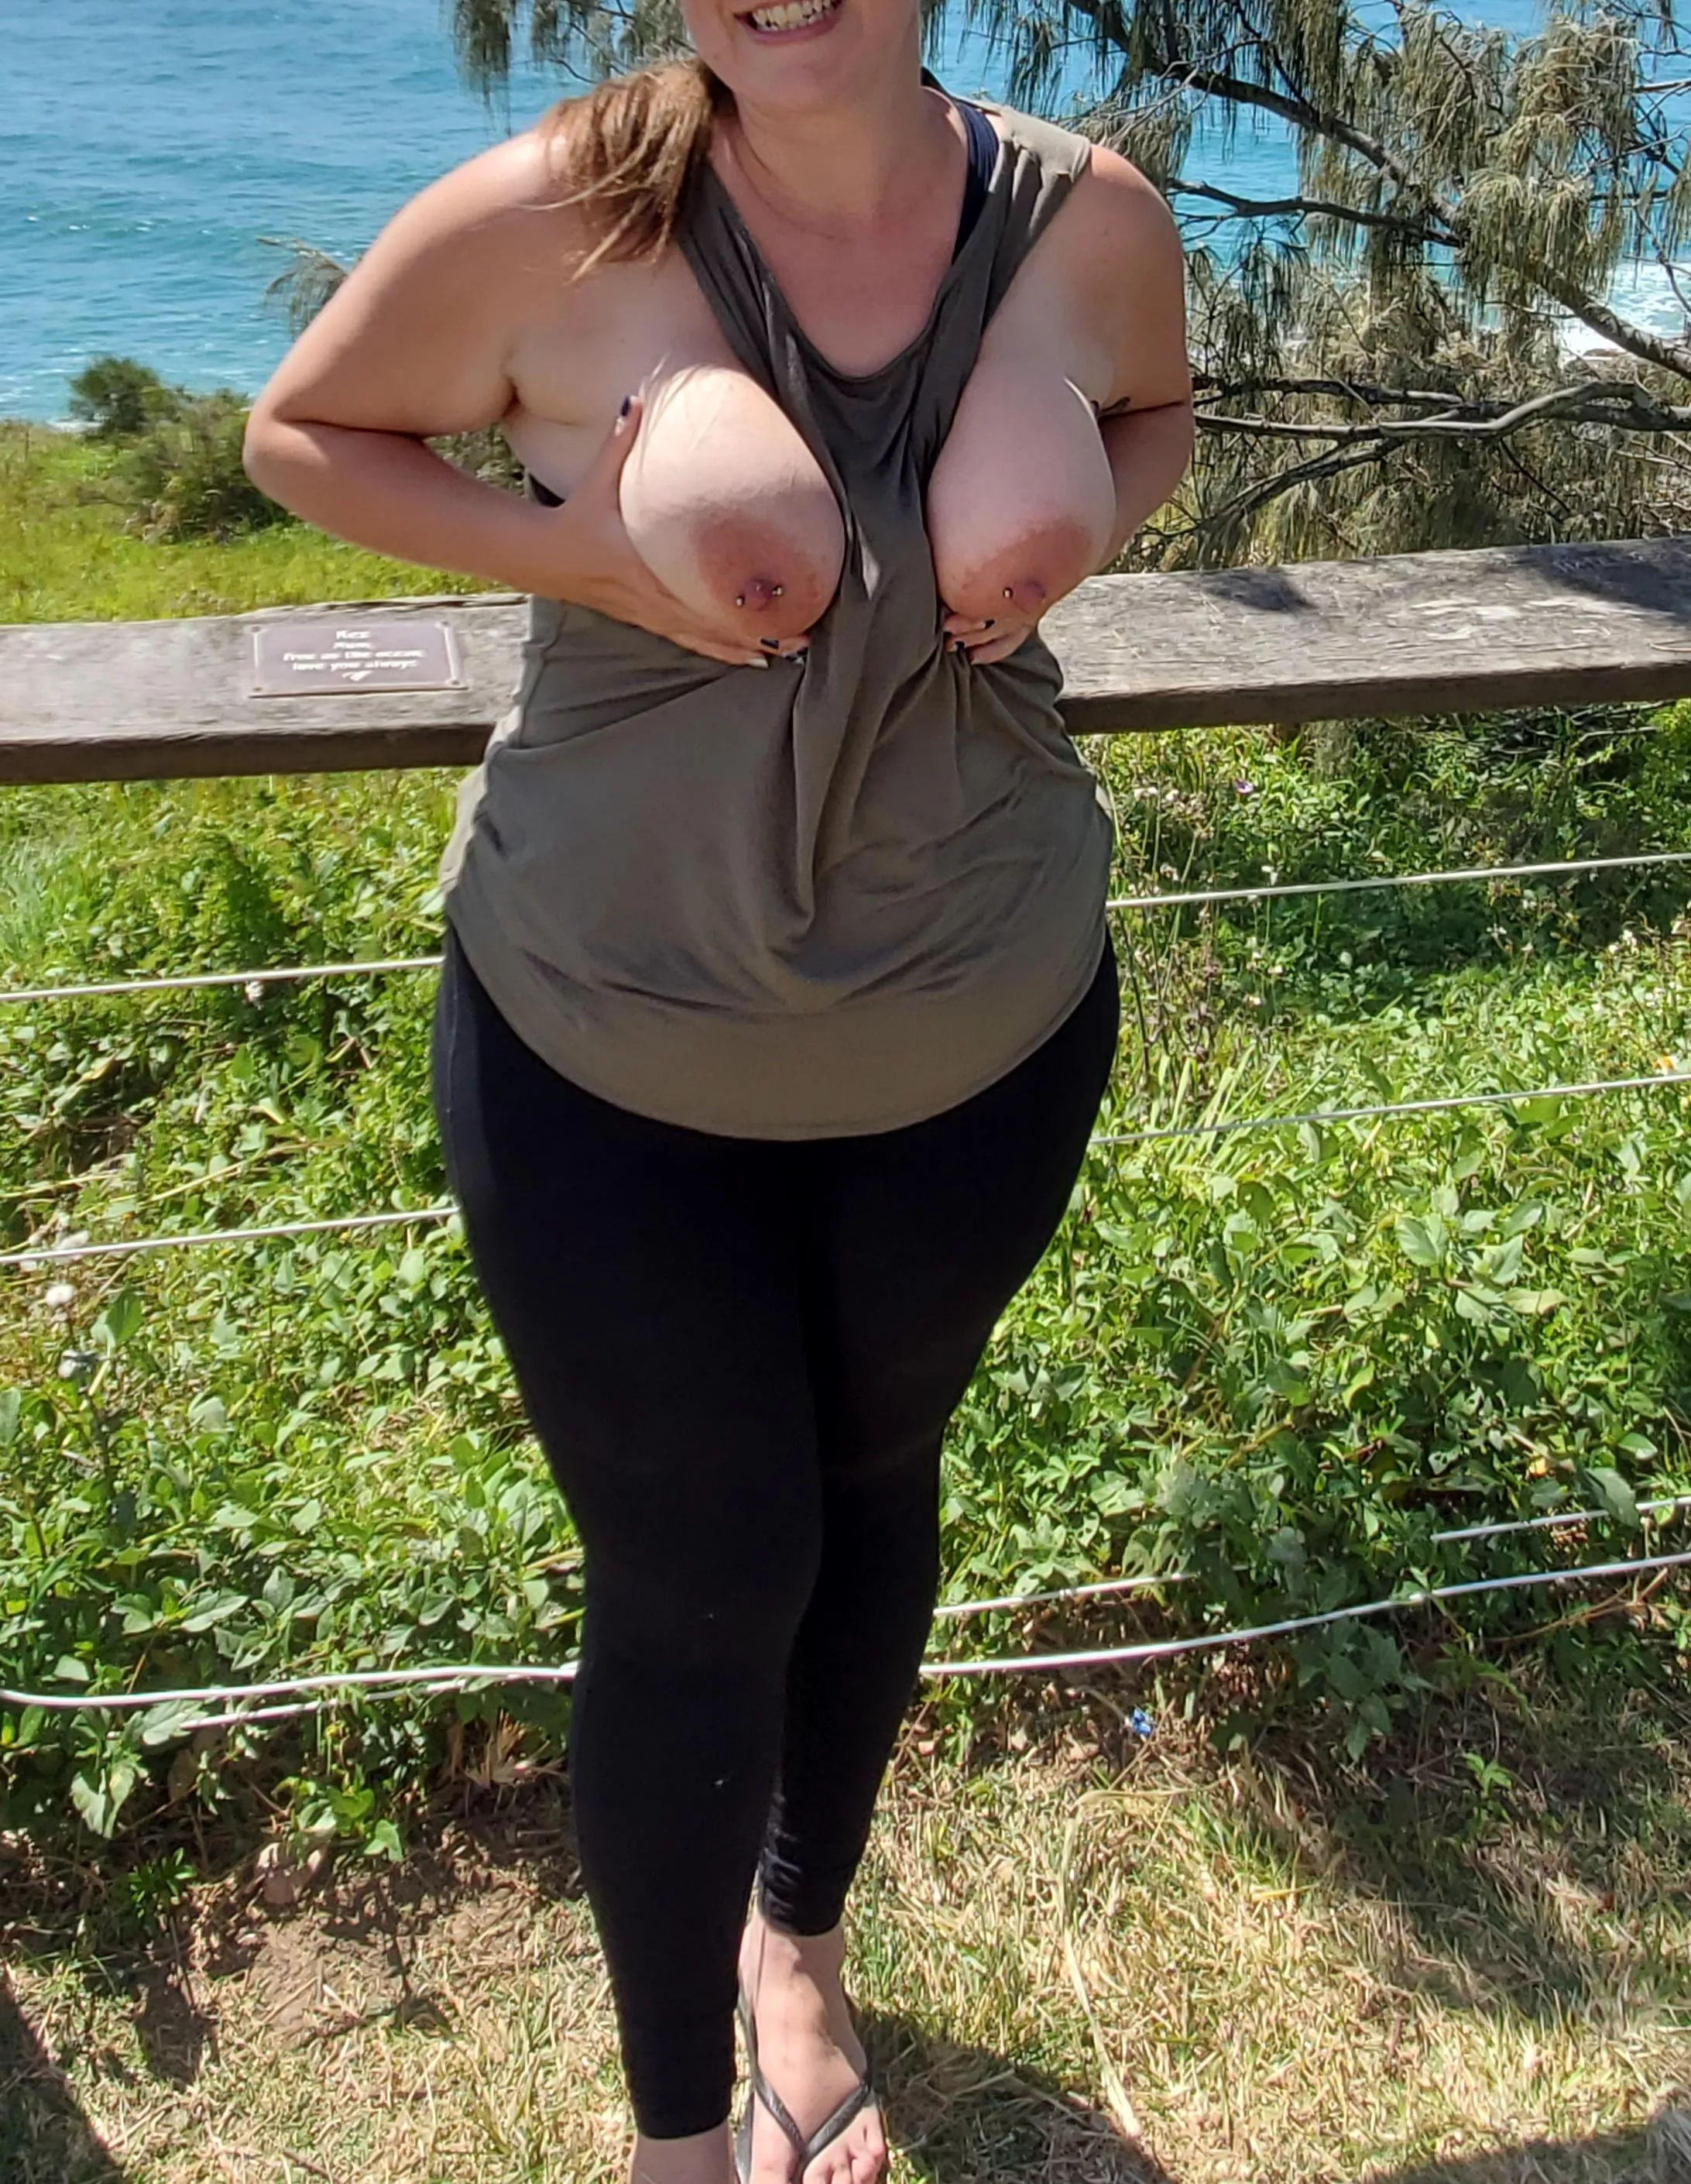 Sunshine Coast big boobs and a smile nudes : public | NUDE-PICS.ORG